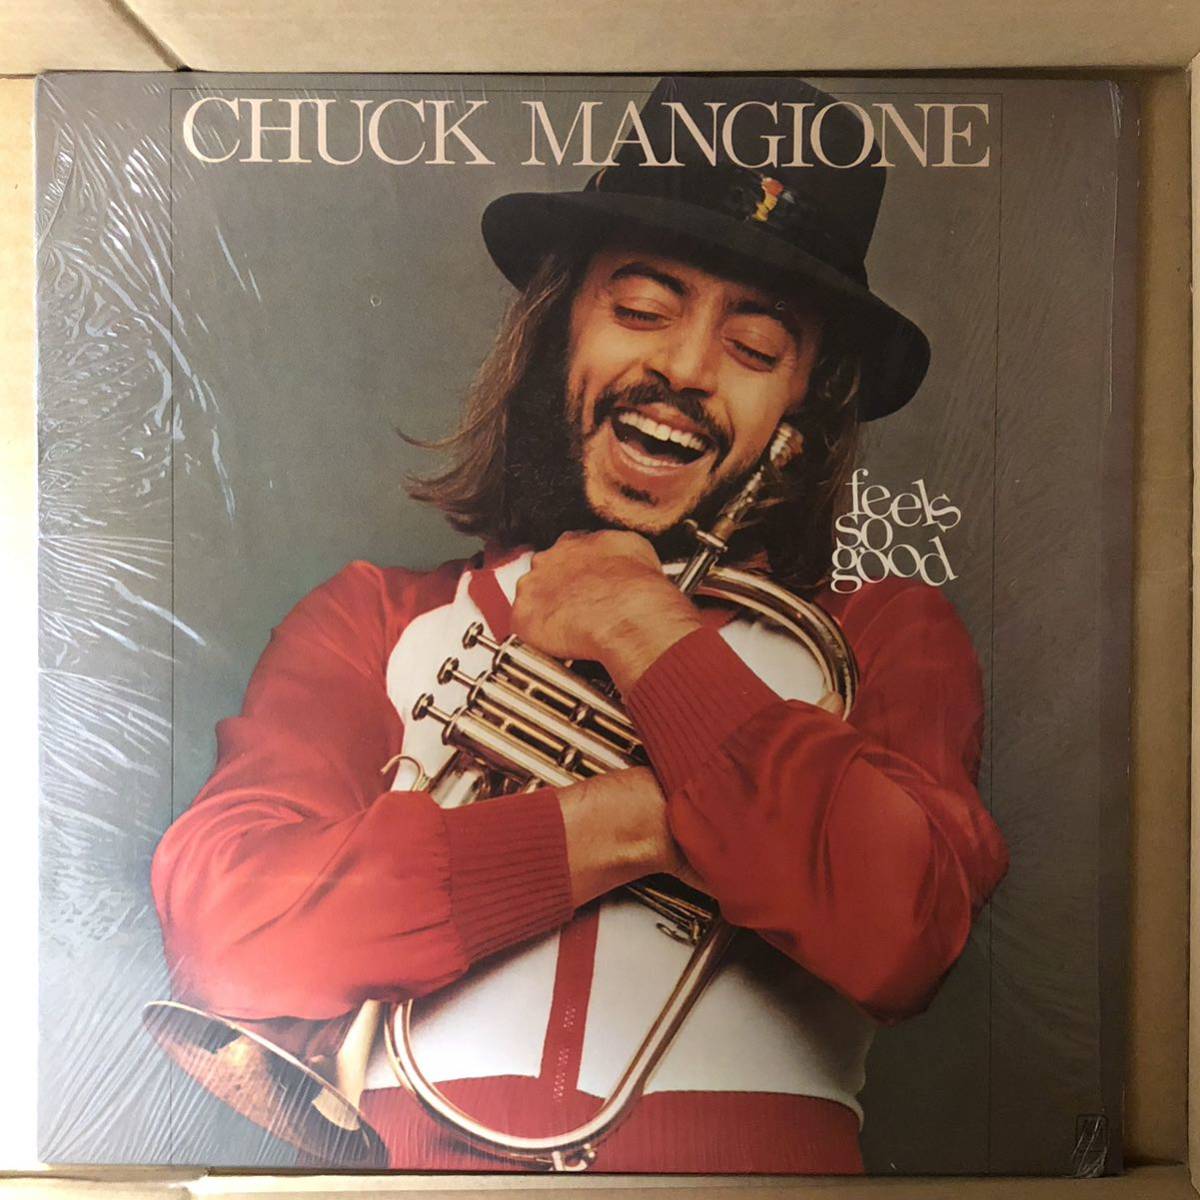 D01 中古LP 中古レコード Chuck Mangione Feels So Good チャックマンジョーネ US盤 メロウグルーヴ シールドあり_画像1